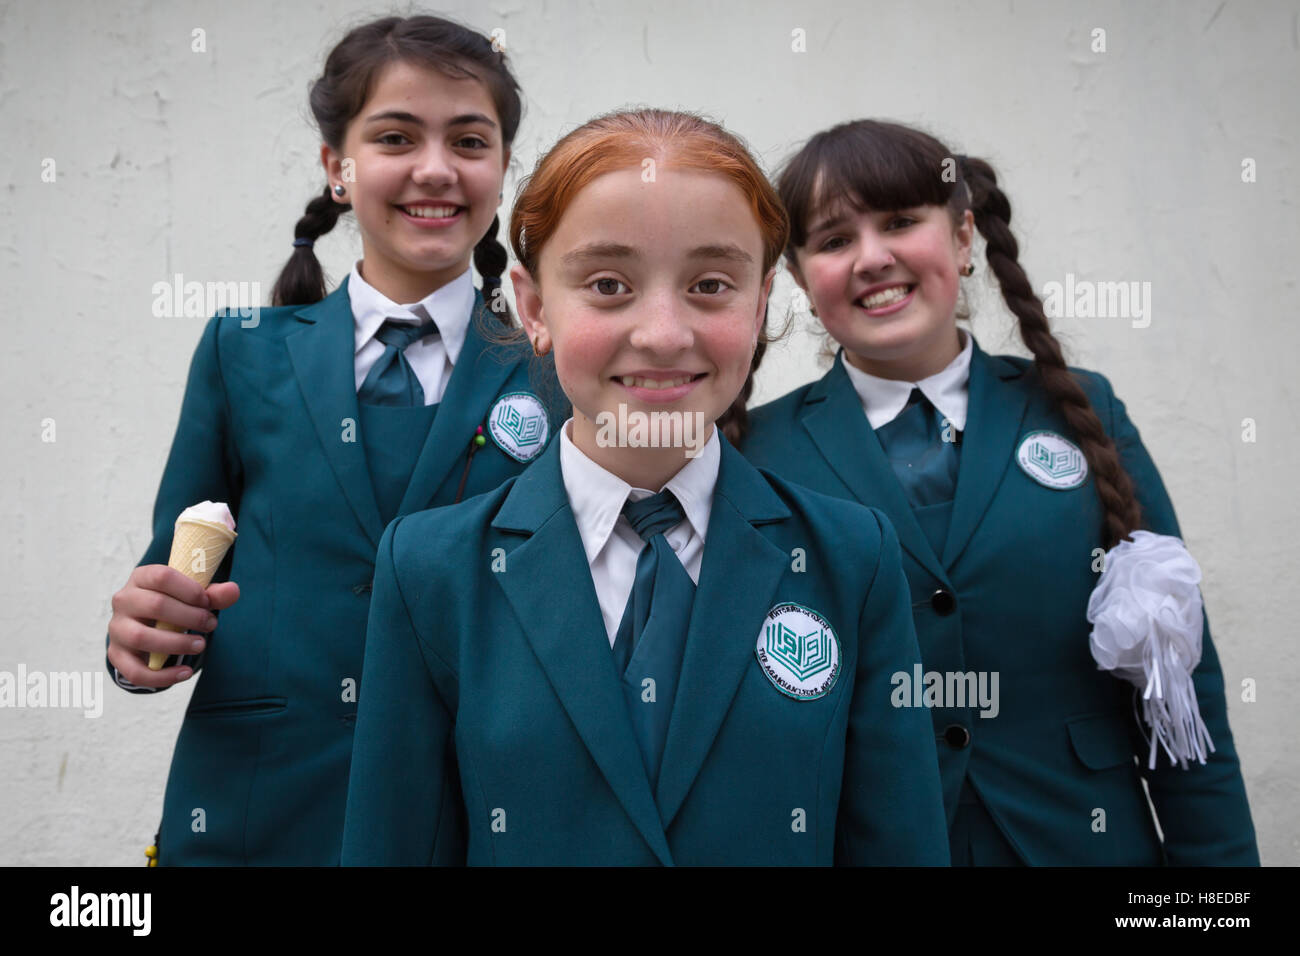 Portrait de personnes du Pamir - école de filles en uniforme - à Khorog - GBAO province - Tadjikistan Banque D'Images